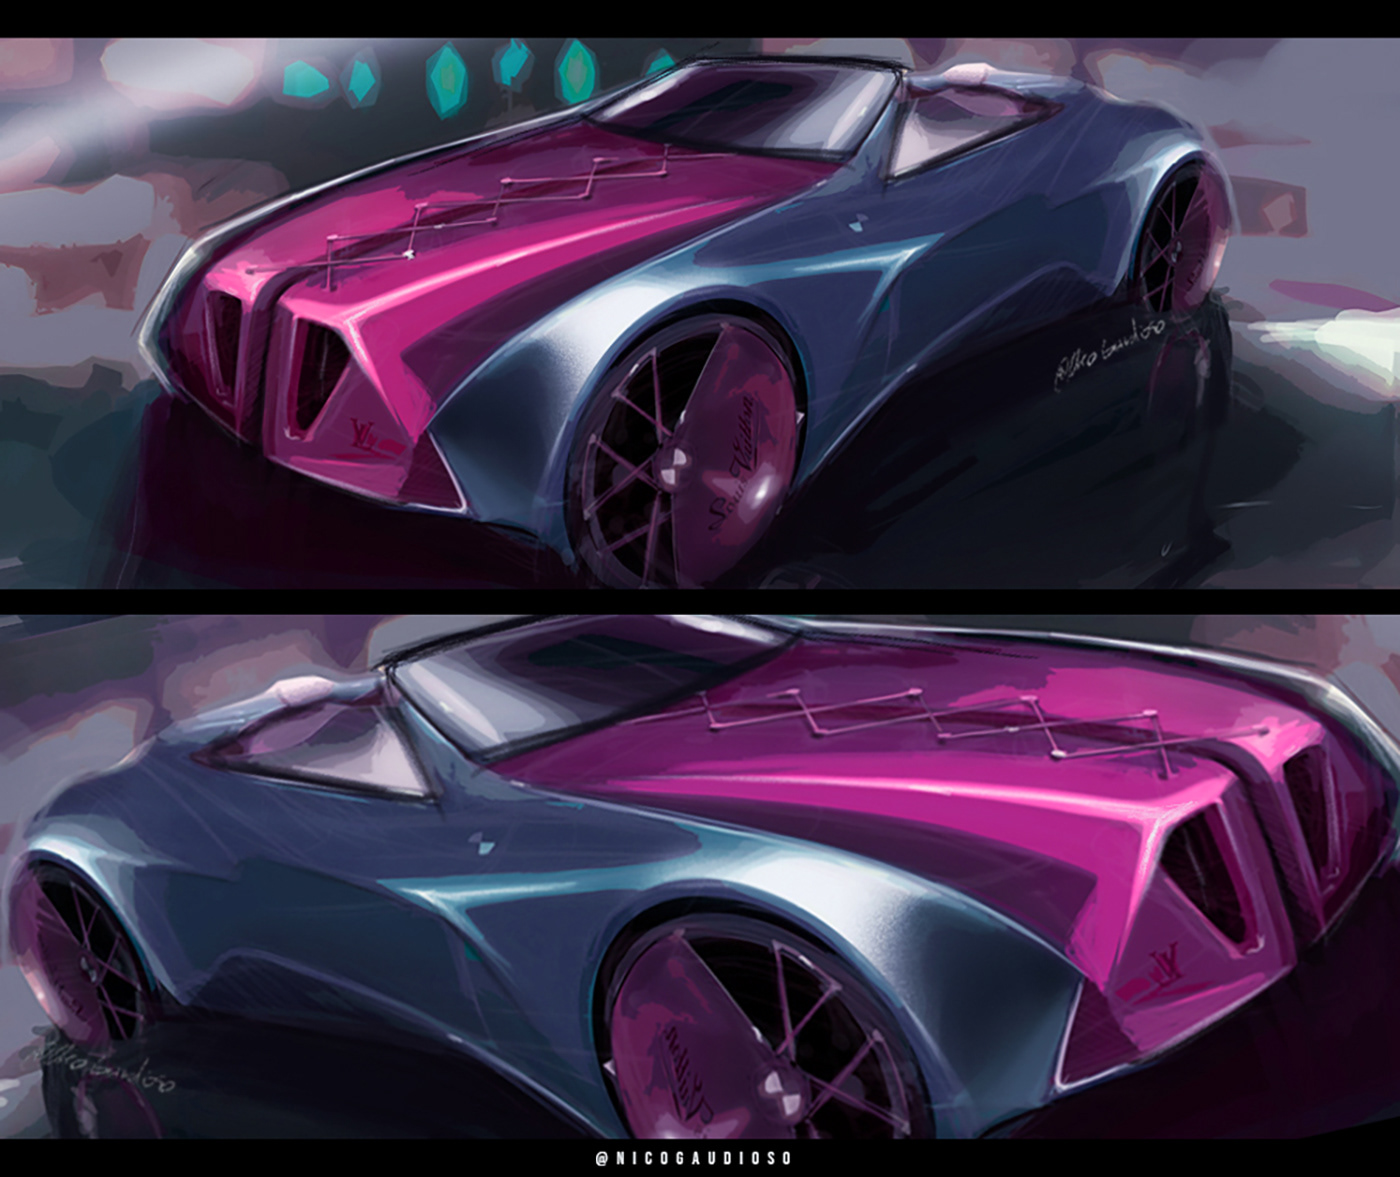 cardesign conceptcar conceptart sketch carsketch transportdesign design transportationdesign McLaren Lancia